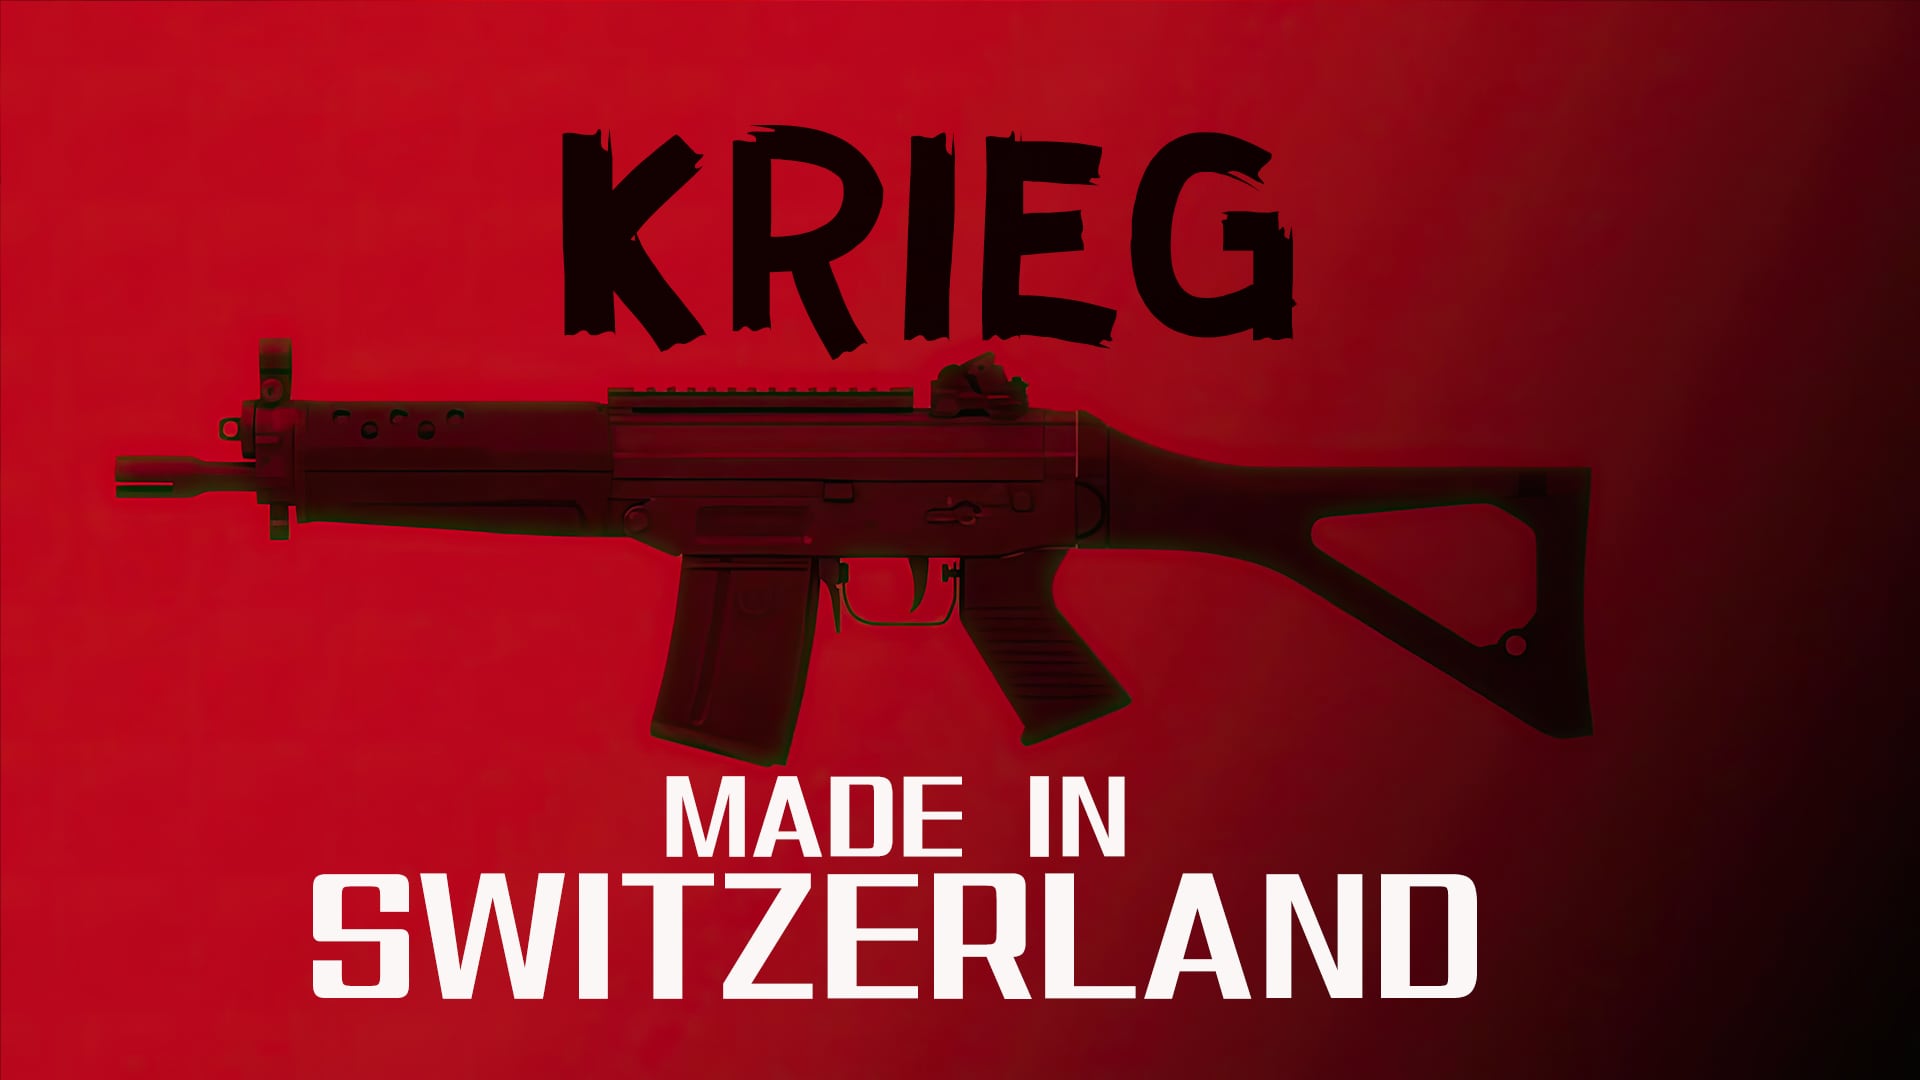 Krieg made in Switzerland